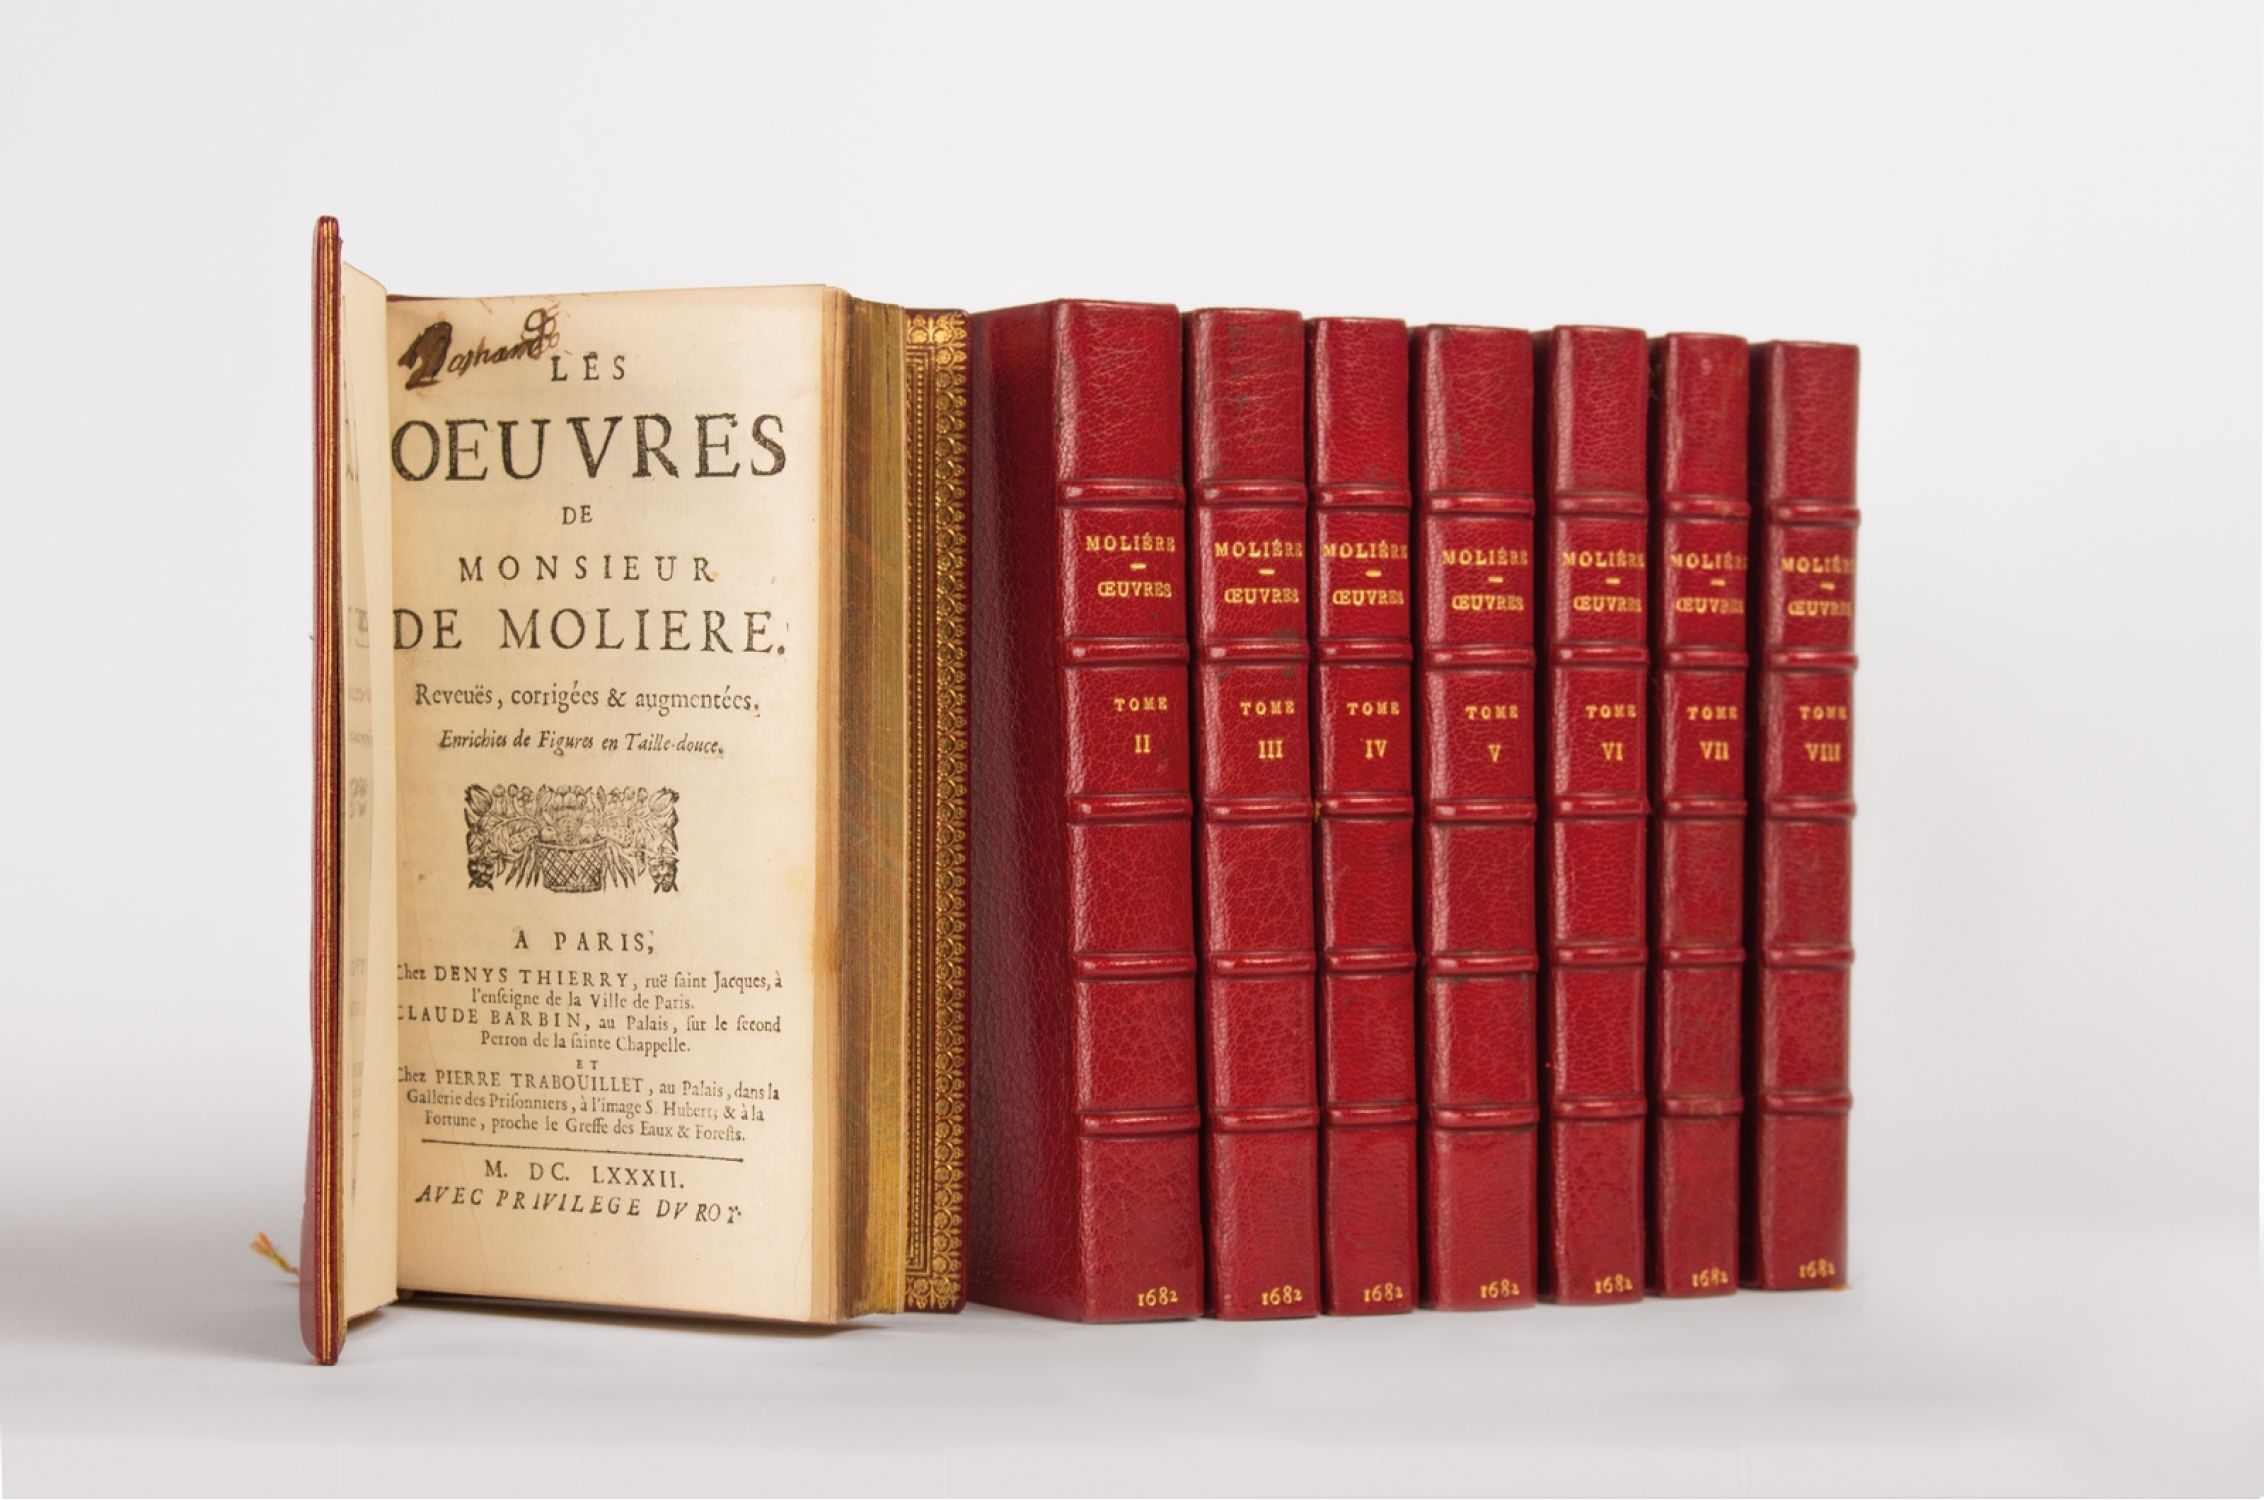 Мольер книги отзывы. Мольер Метафраст. Moliere first English Edition. Oeuvres posthumes de Moliere книга 1684 года. Книга Мольер на французском языке 1904 фото.